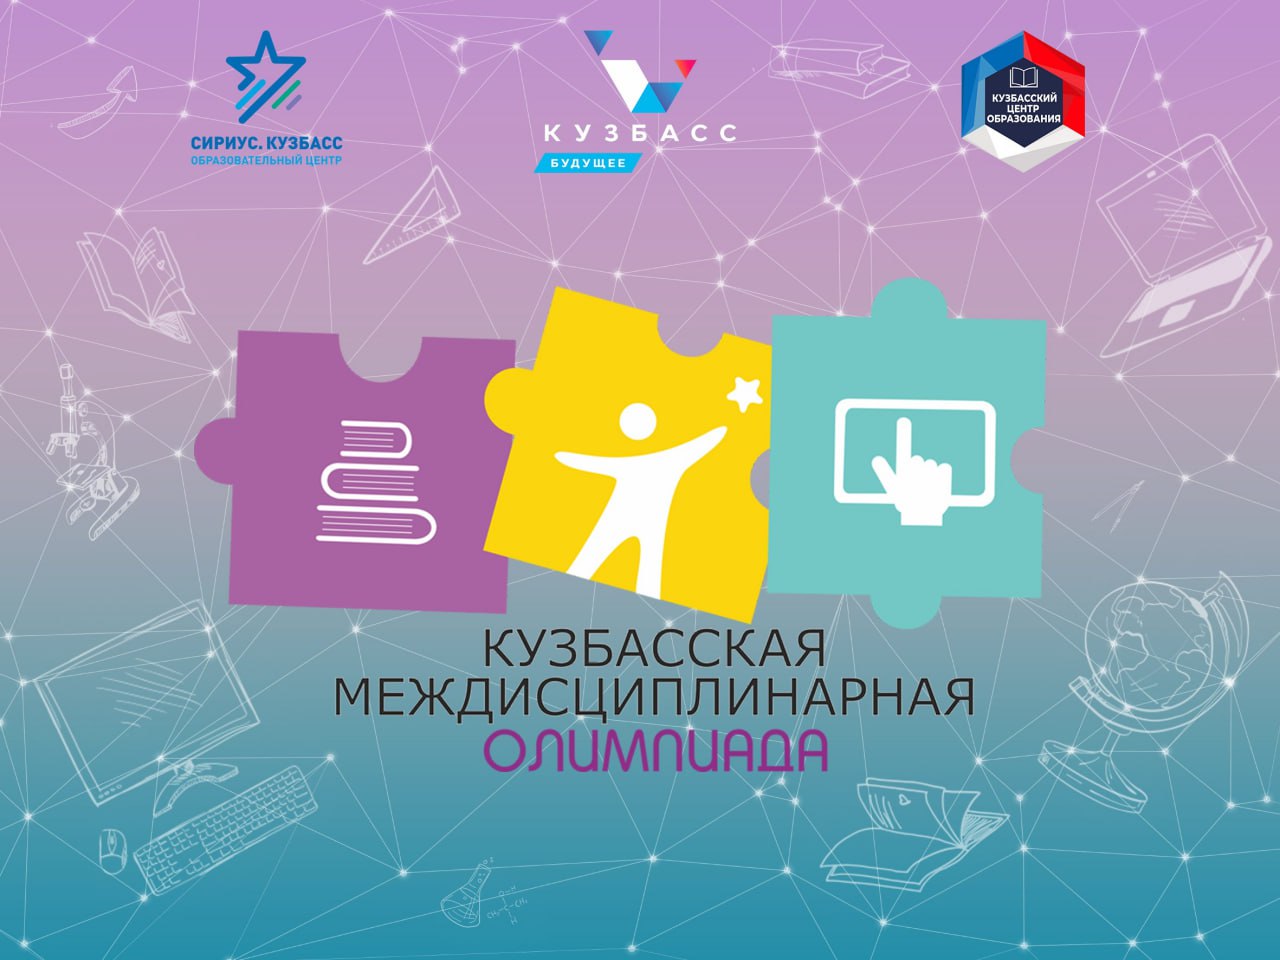 В Кузбассе проходит онлайн-олимпиада среди обучающихся с ограниченными возможностями здоровья